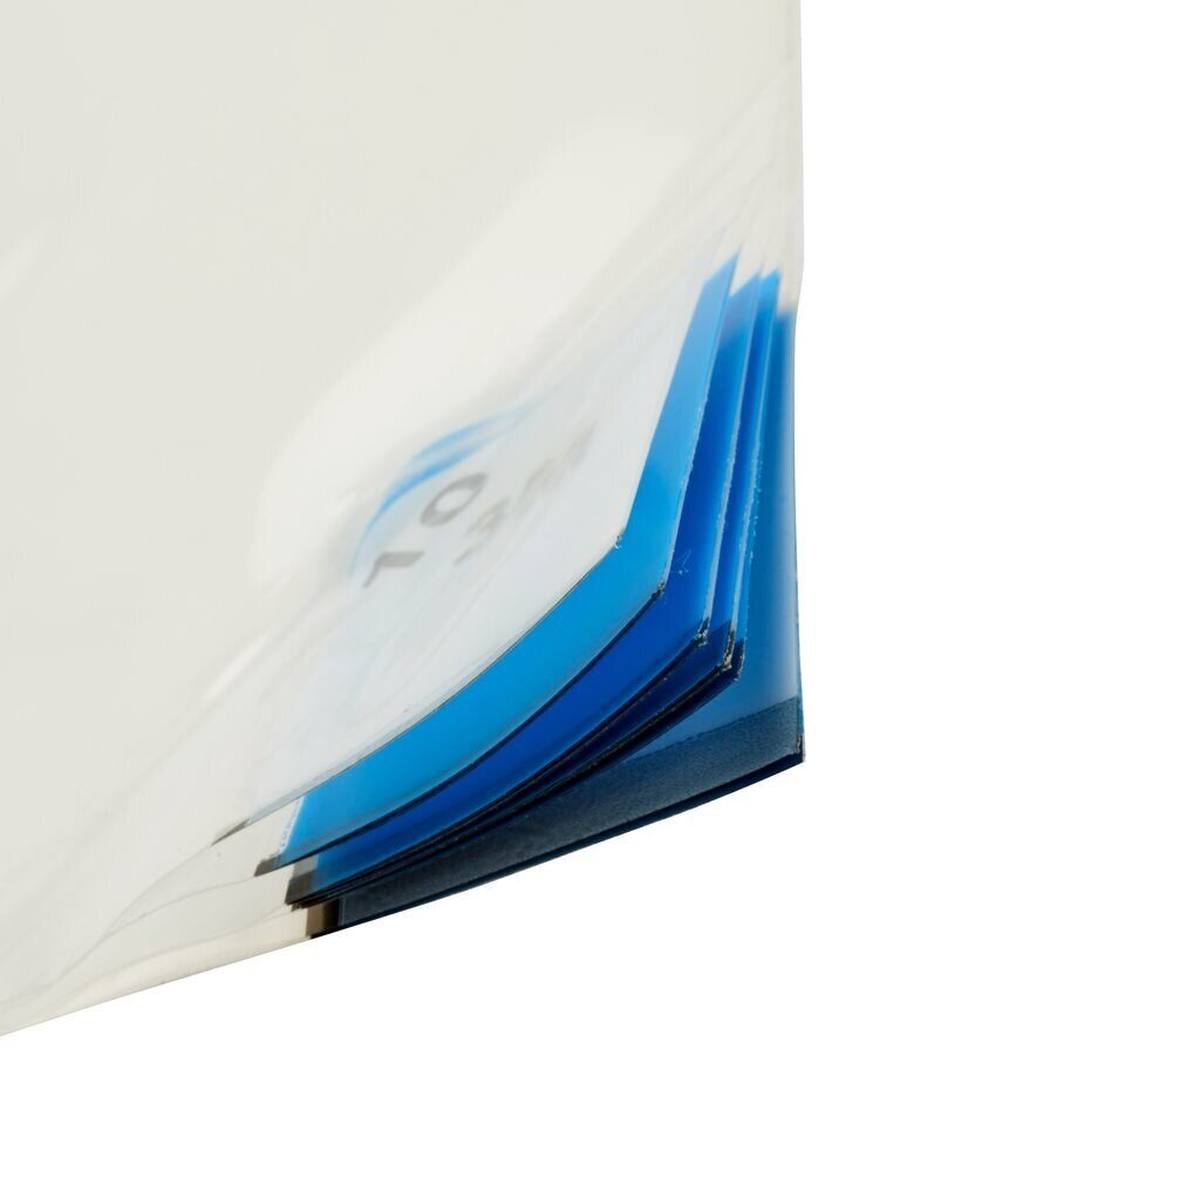 3M 4300 Nomad Feinstaub Adhäsivmatte, weiß, 0,9m x 0,45m, 40Stück transparent Polyethylen-Schichten